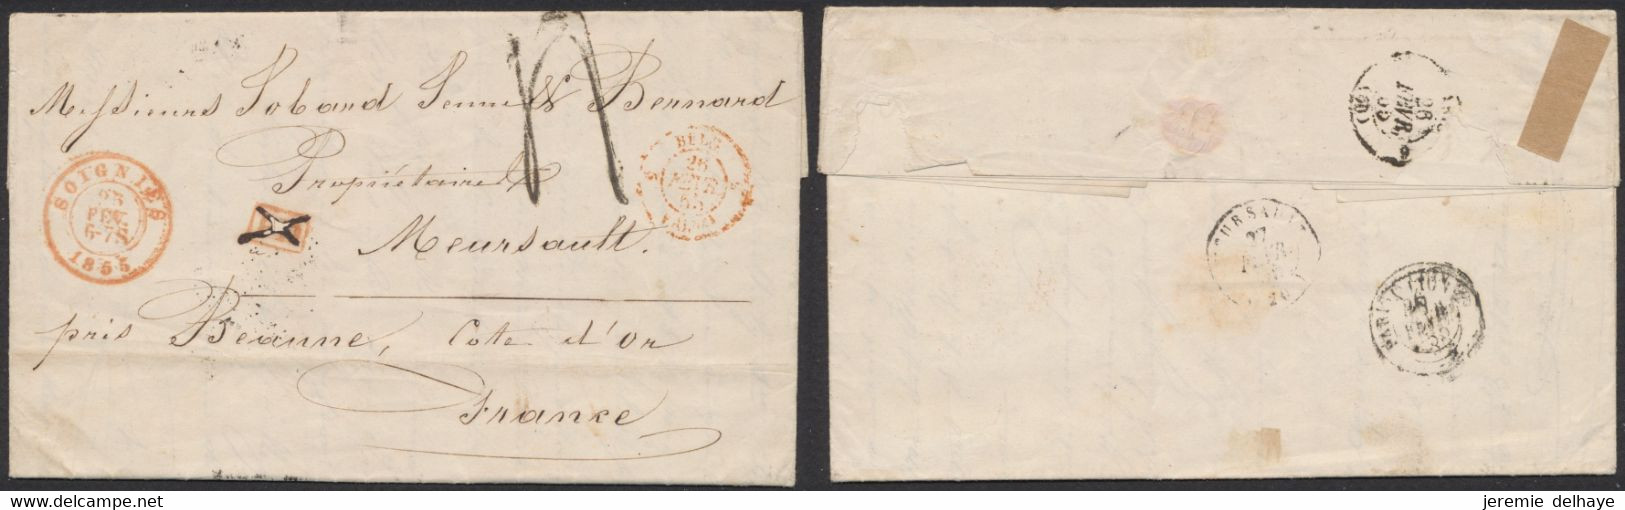 LAC Non Affranchie + Cachet Dateur "Soignies" (1855) Griffe PD Annulé à La Plume, Port 4 Décimes > Meursault (France) - Posta Rurale